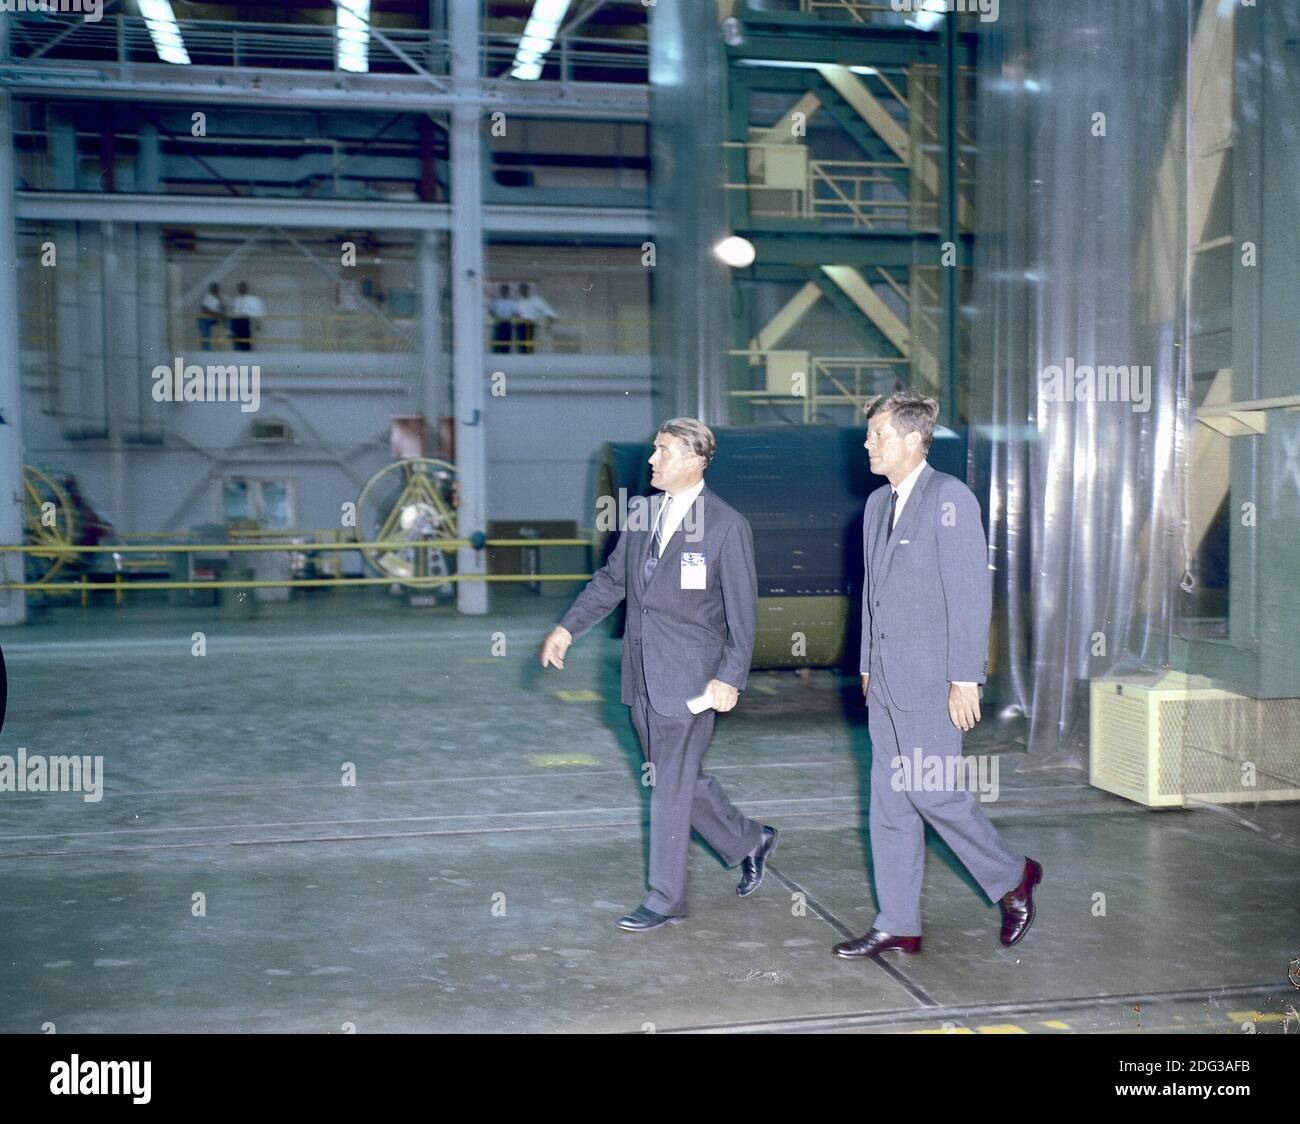 Il presidente degli Stati Uniti John F. Kennedy ha visitato il Marshall Space Flight Center (MSFC) a Huntsville, Alabama, USA, il 11 settembre 1962. Qui il presidente Kennedy e il dottor Wernher von Braun, direttore del MSFC, si sono recati in un tour di uno dei laboratori. Foto di NASA via CNP Foto Stock